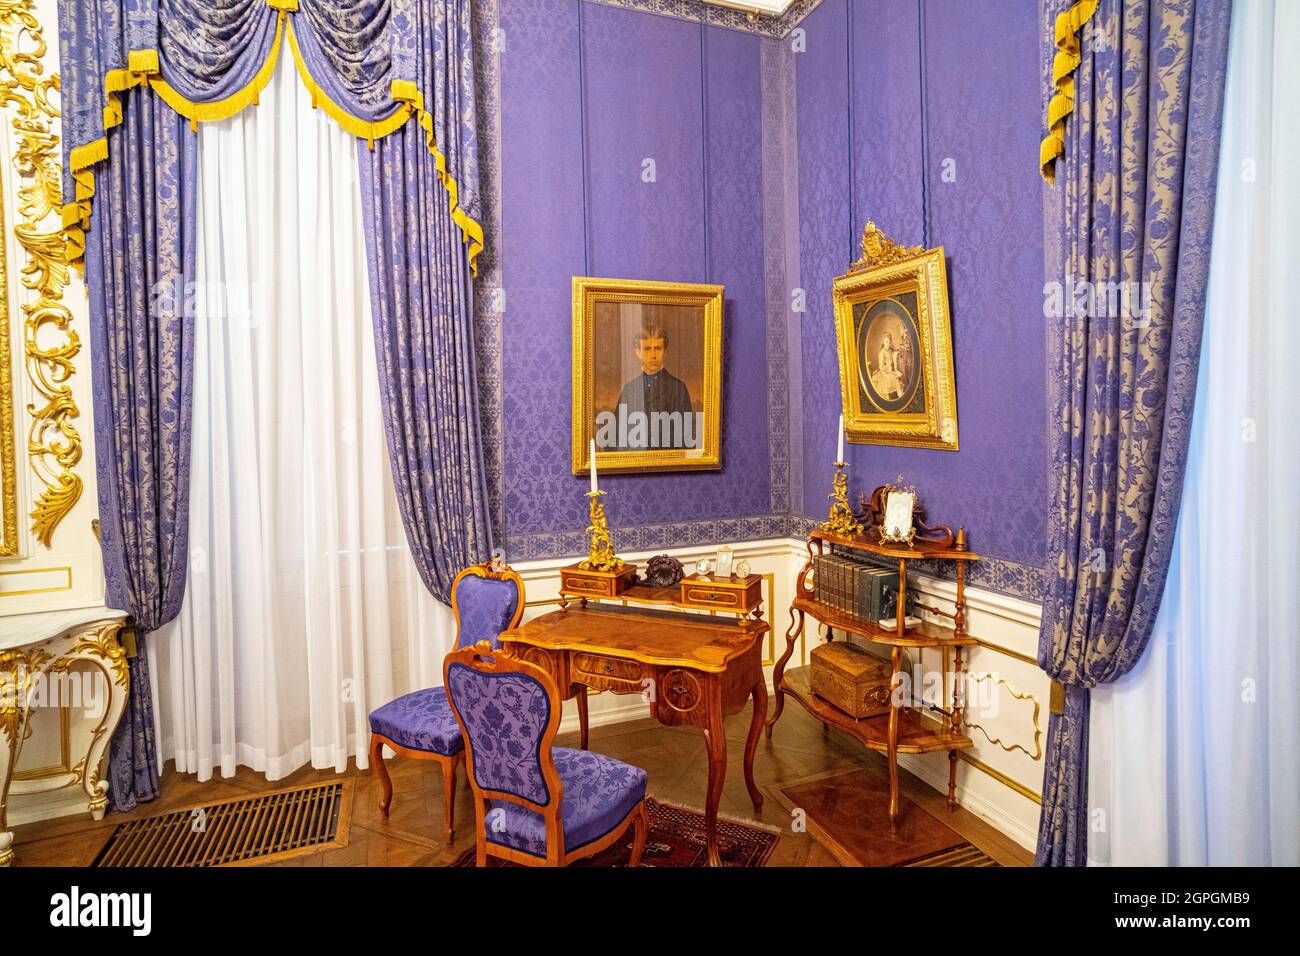 Hongrie, autour de Budapest, Godollo, château royal baroque de Gödöllö, résidence d'été de Sissi (Reine Elisabeth), salle de bains de la reine Elisabeth Banque D'Images